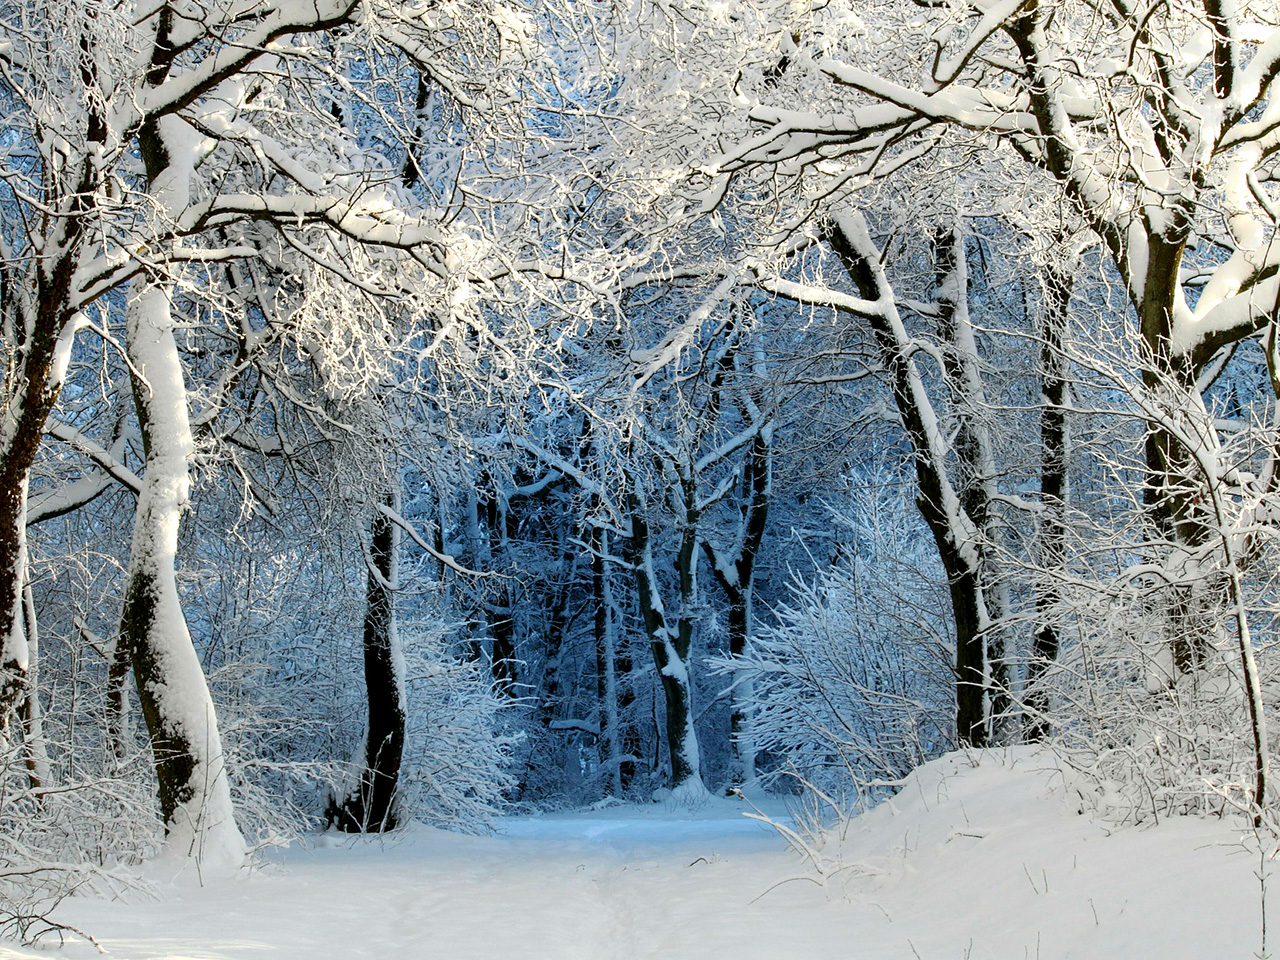 Šumski puteljak prekriven bijelim snježnim pokrivačem kao i drveća koja ga okružuju. 